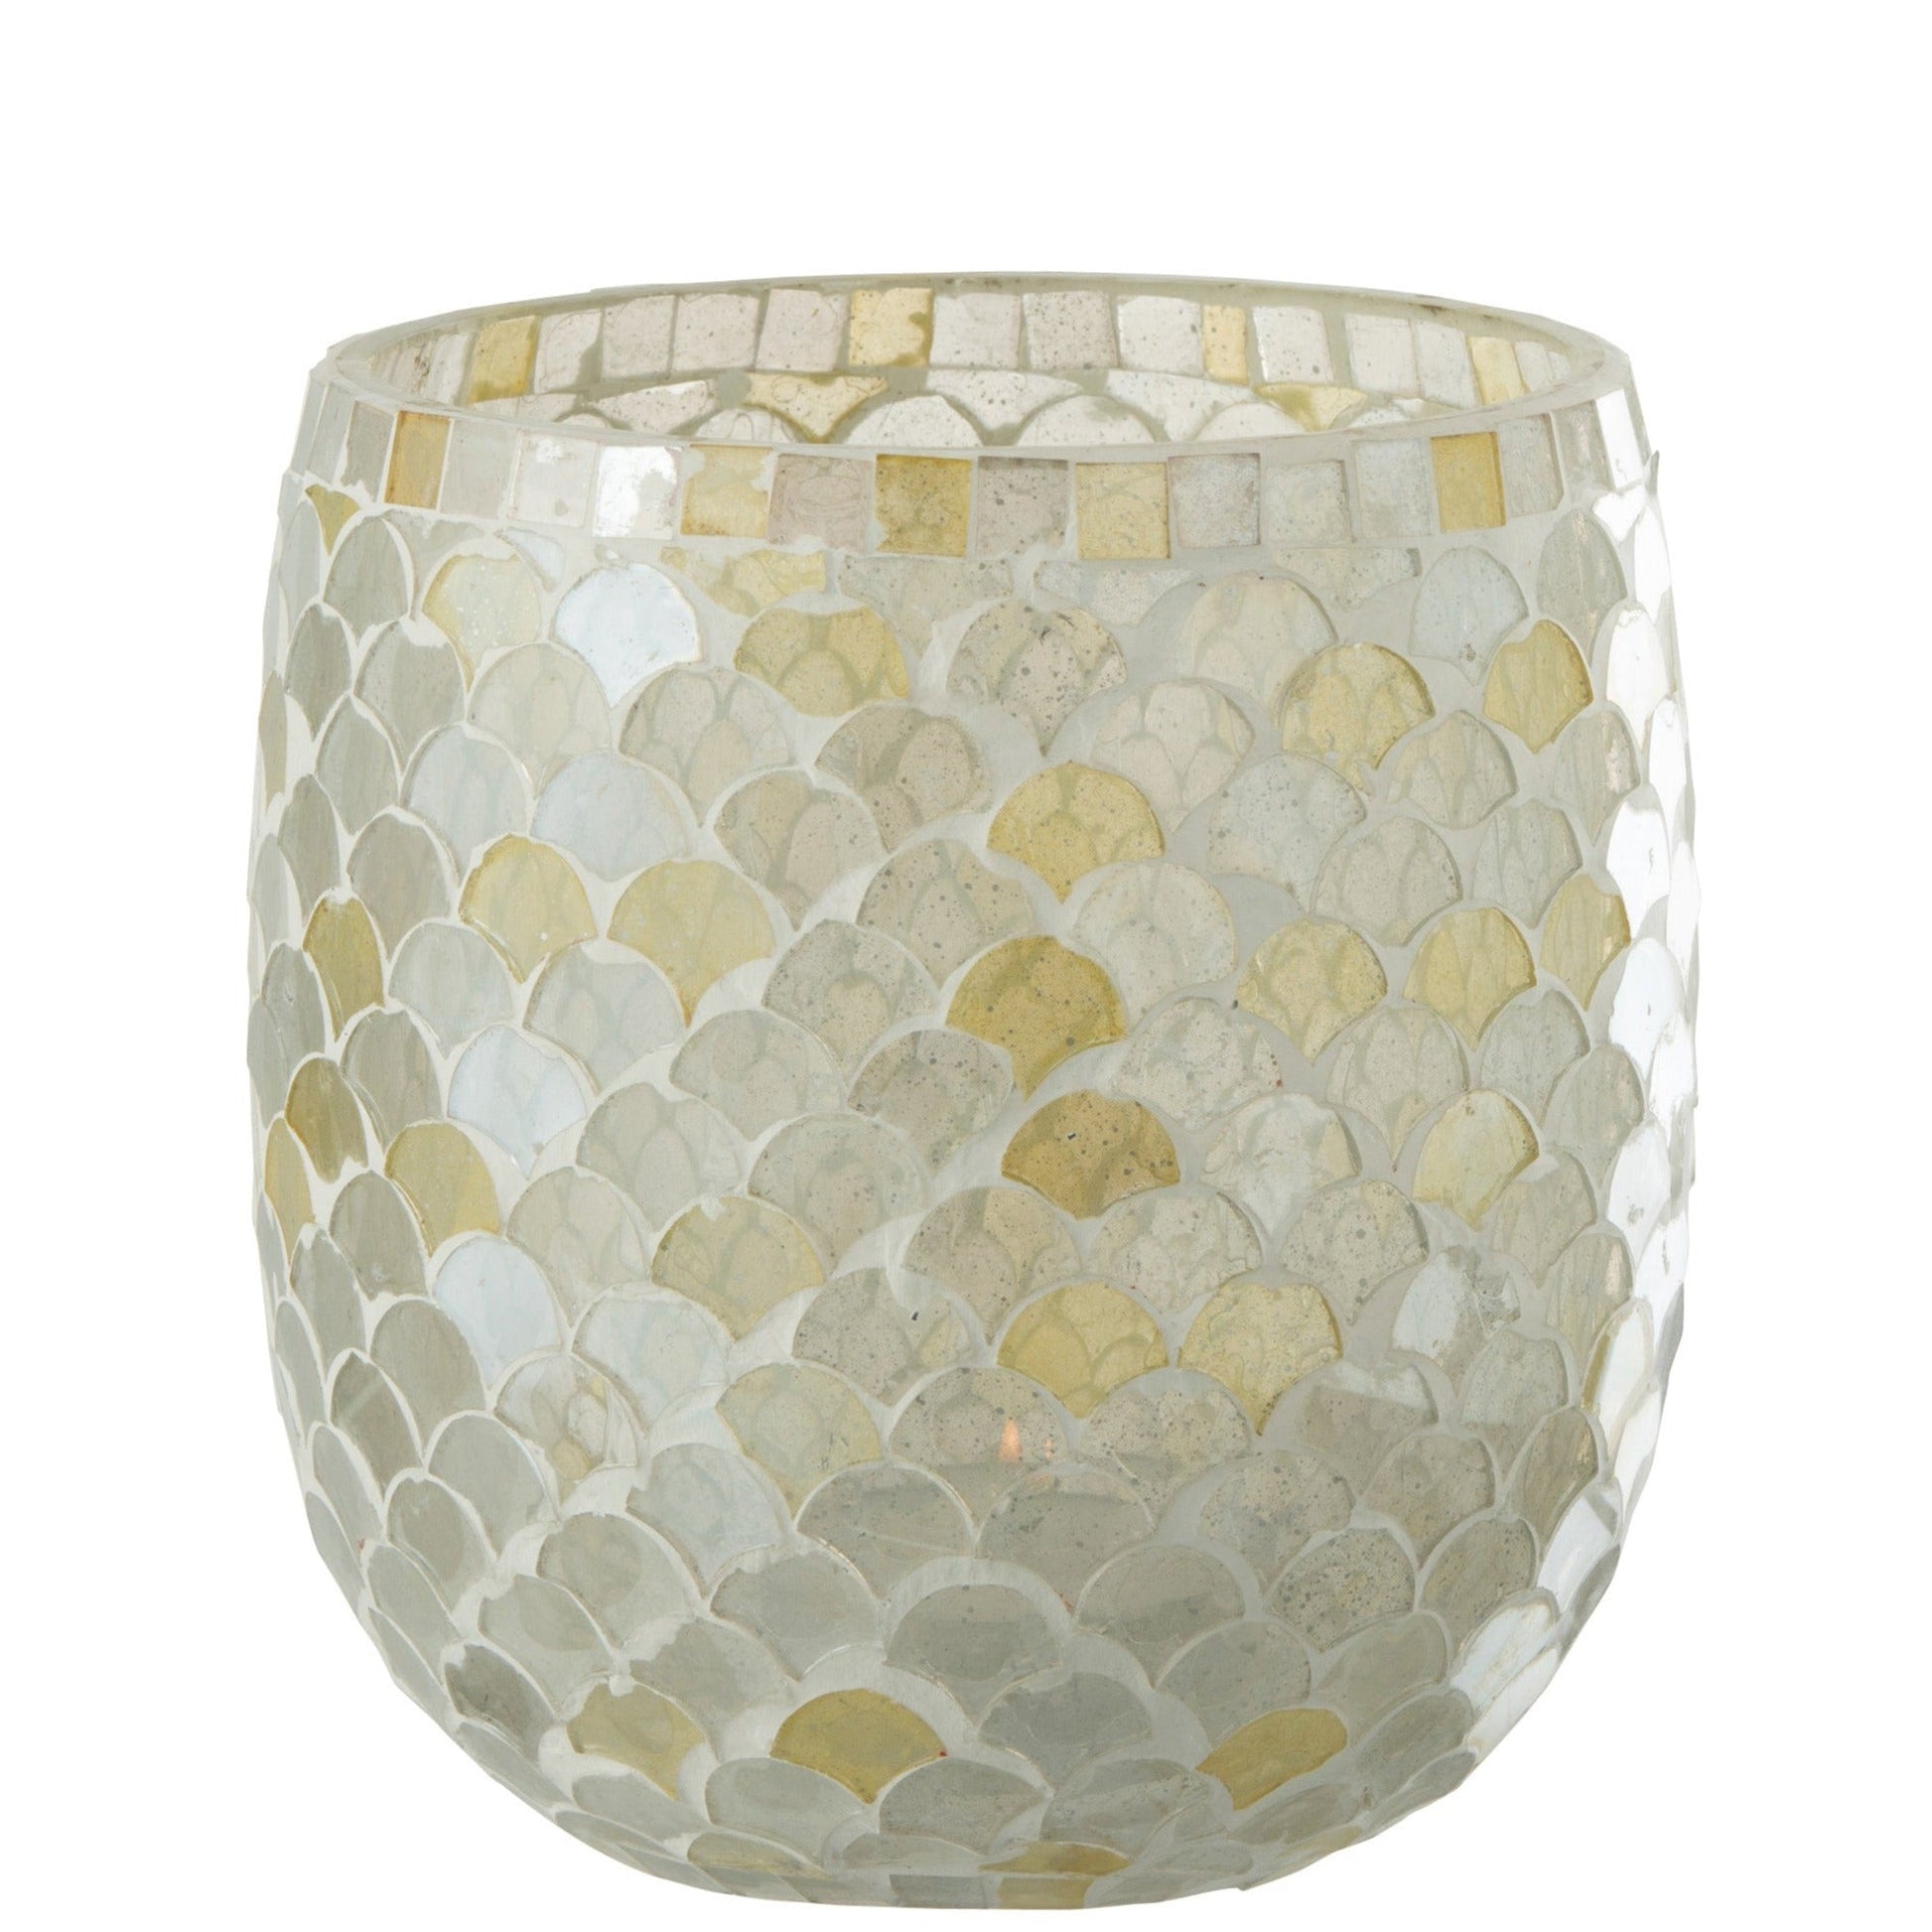 Glass Mosaic Tealight Holder